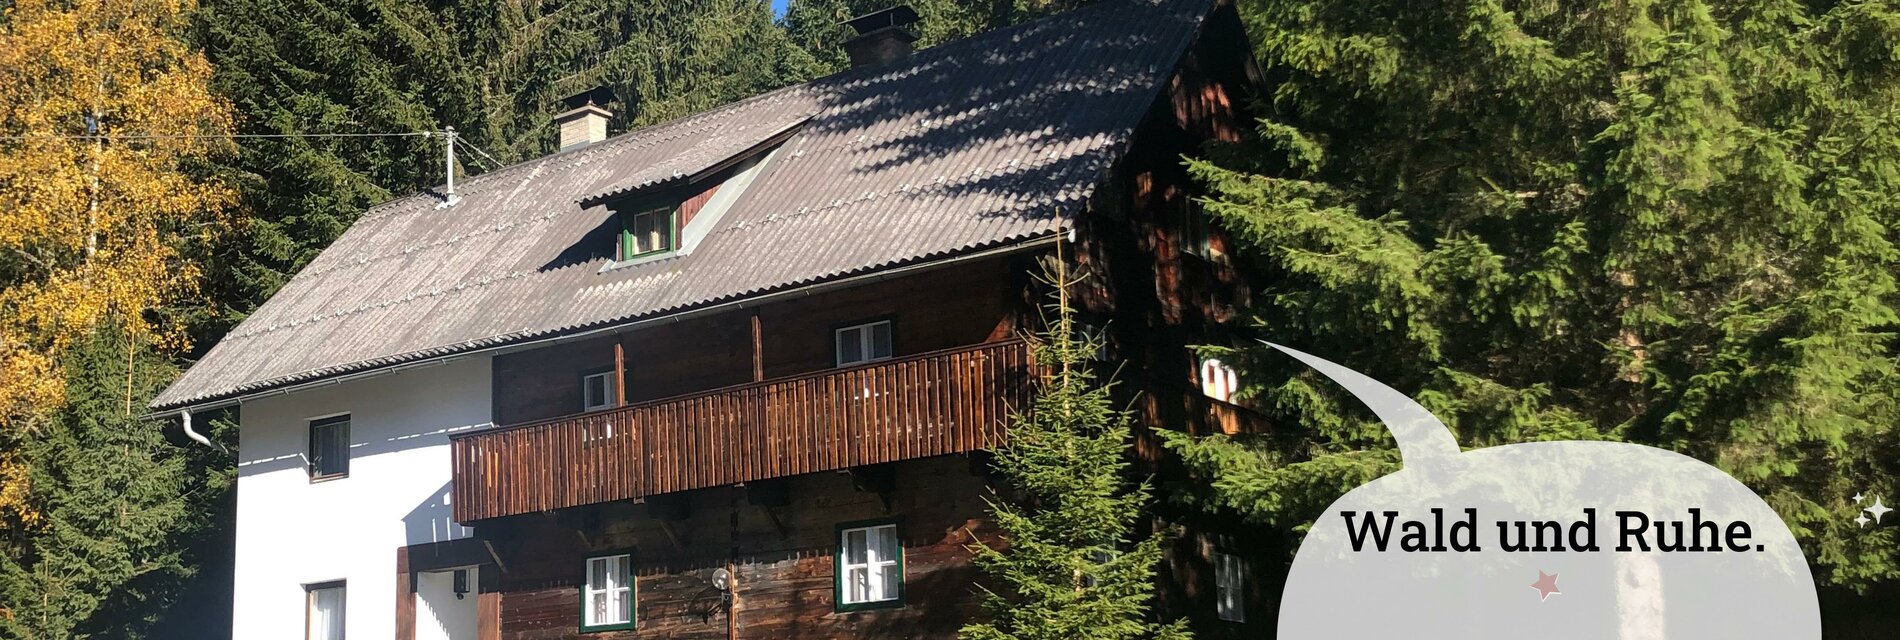 Nockstern Hütte Wald und Ruhe